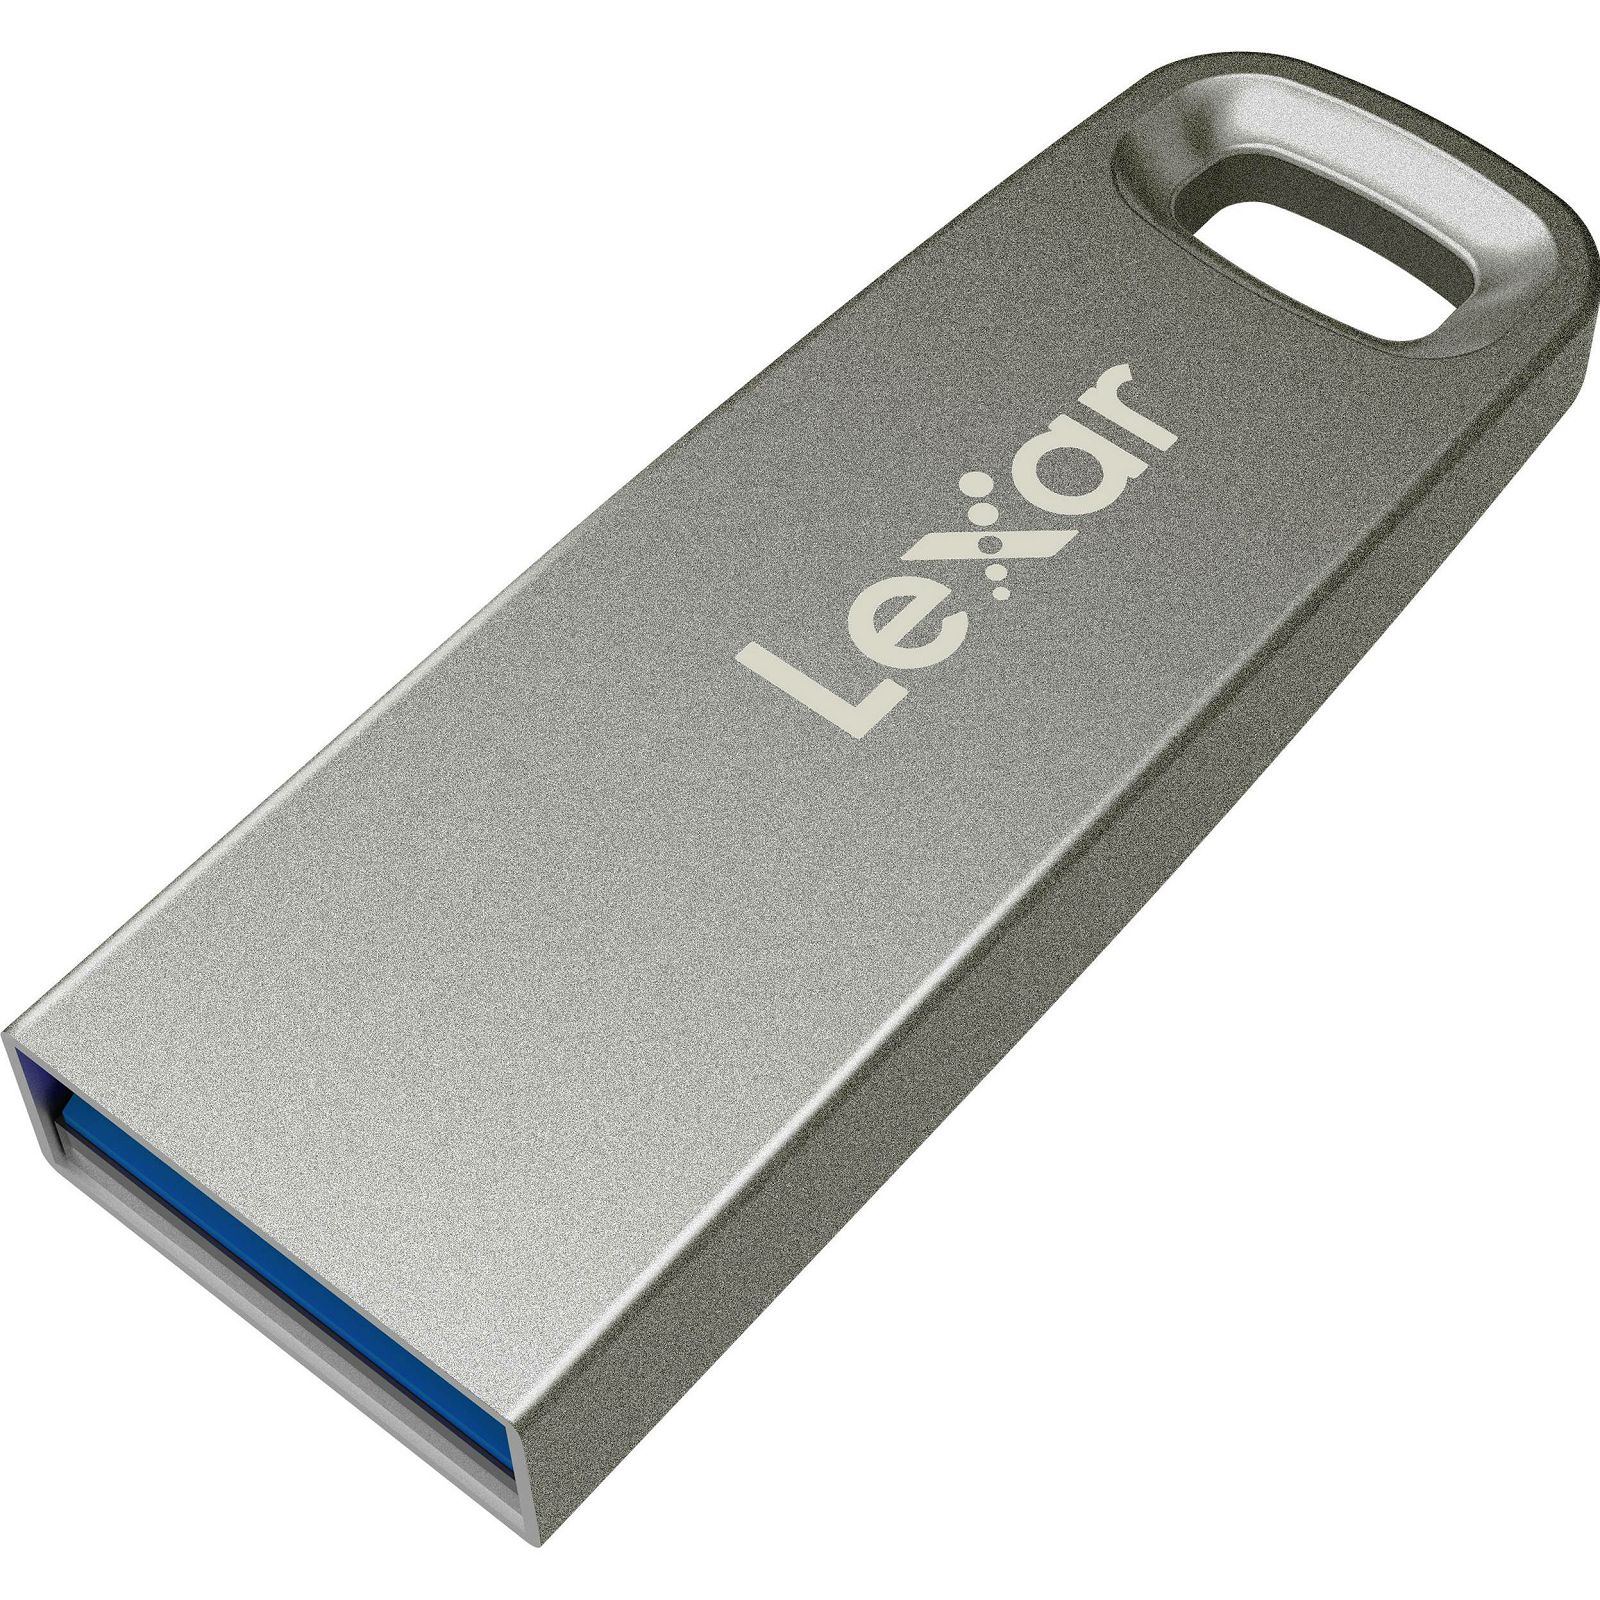 Lexar JumpDrive M35 64GB USB 3.0 Silver Housing 100MB/s memorija (LJDM035064G-BNSNG)